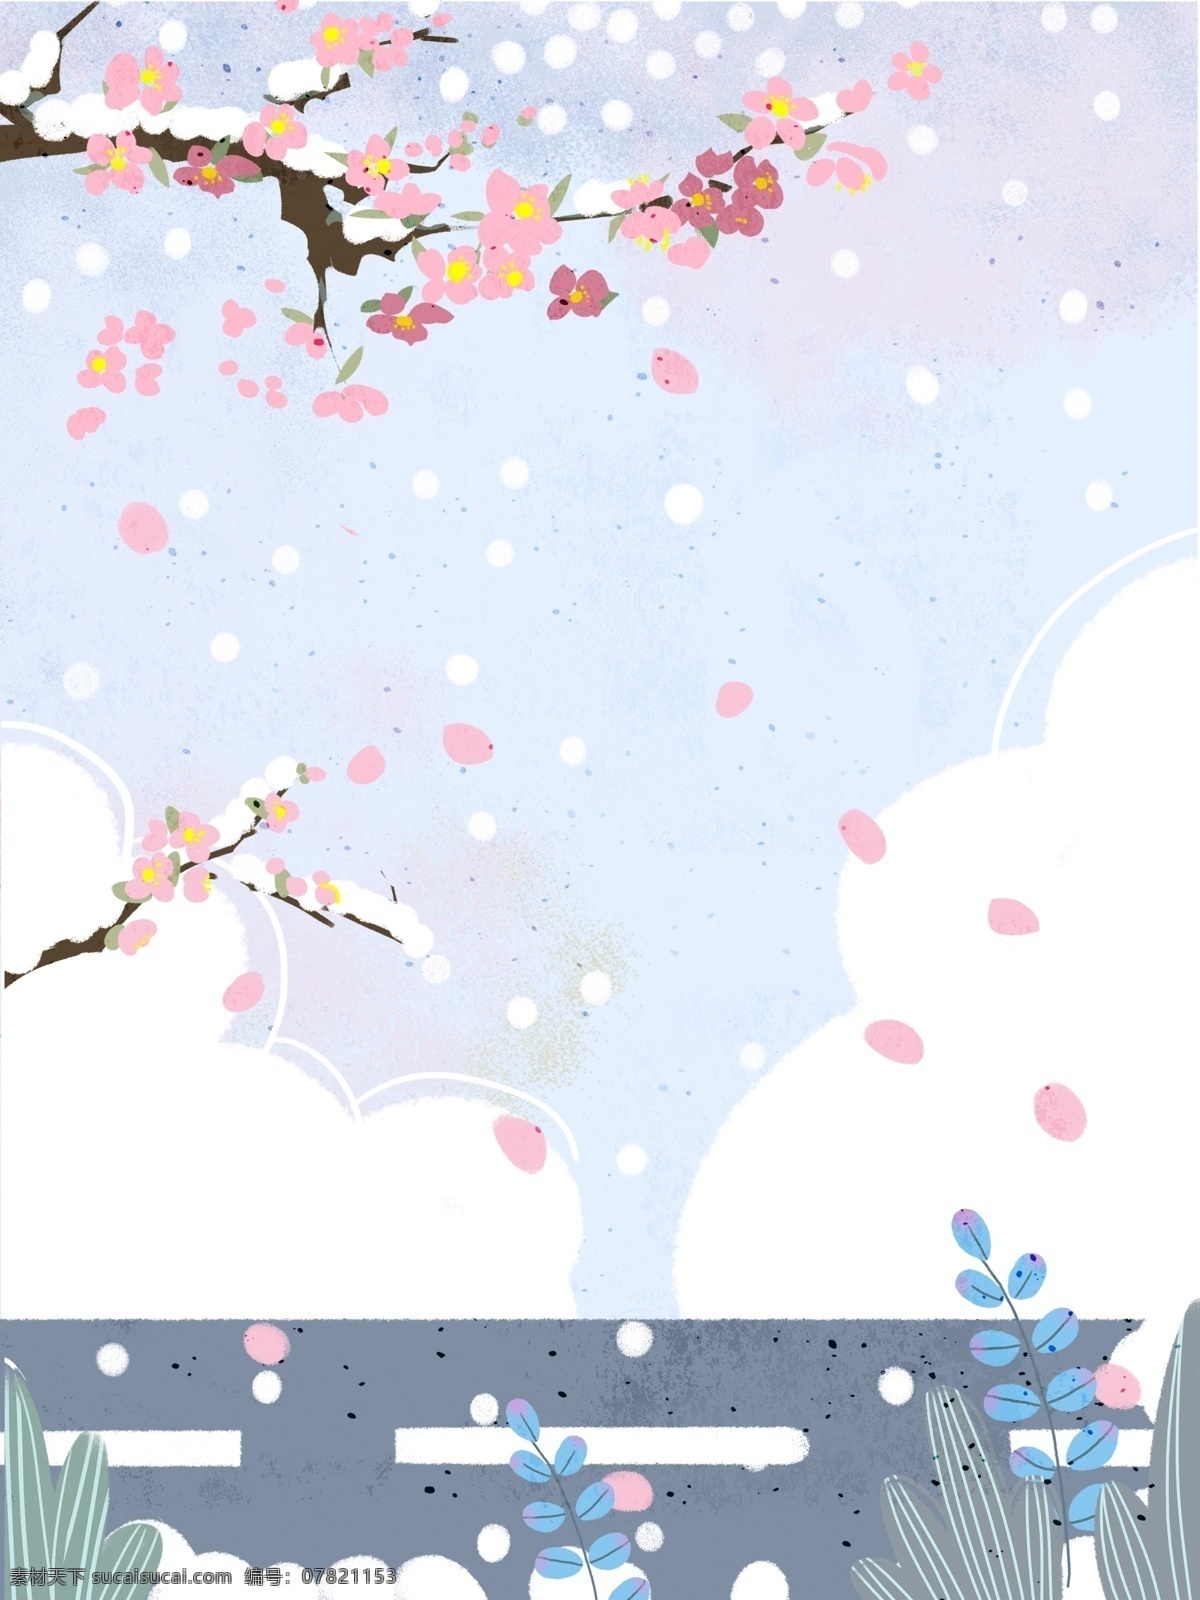 彩绘 大雪 节气 雪景 背景 中国风 雪花 冬天 雪地 大雪背景 冬季大雪 背景设计